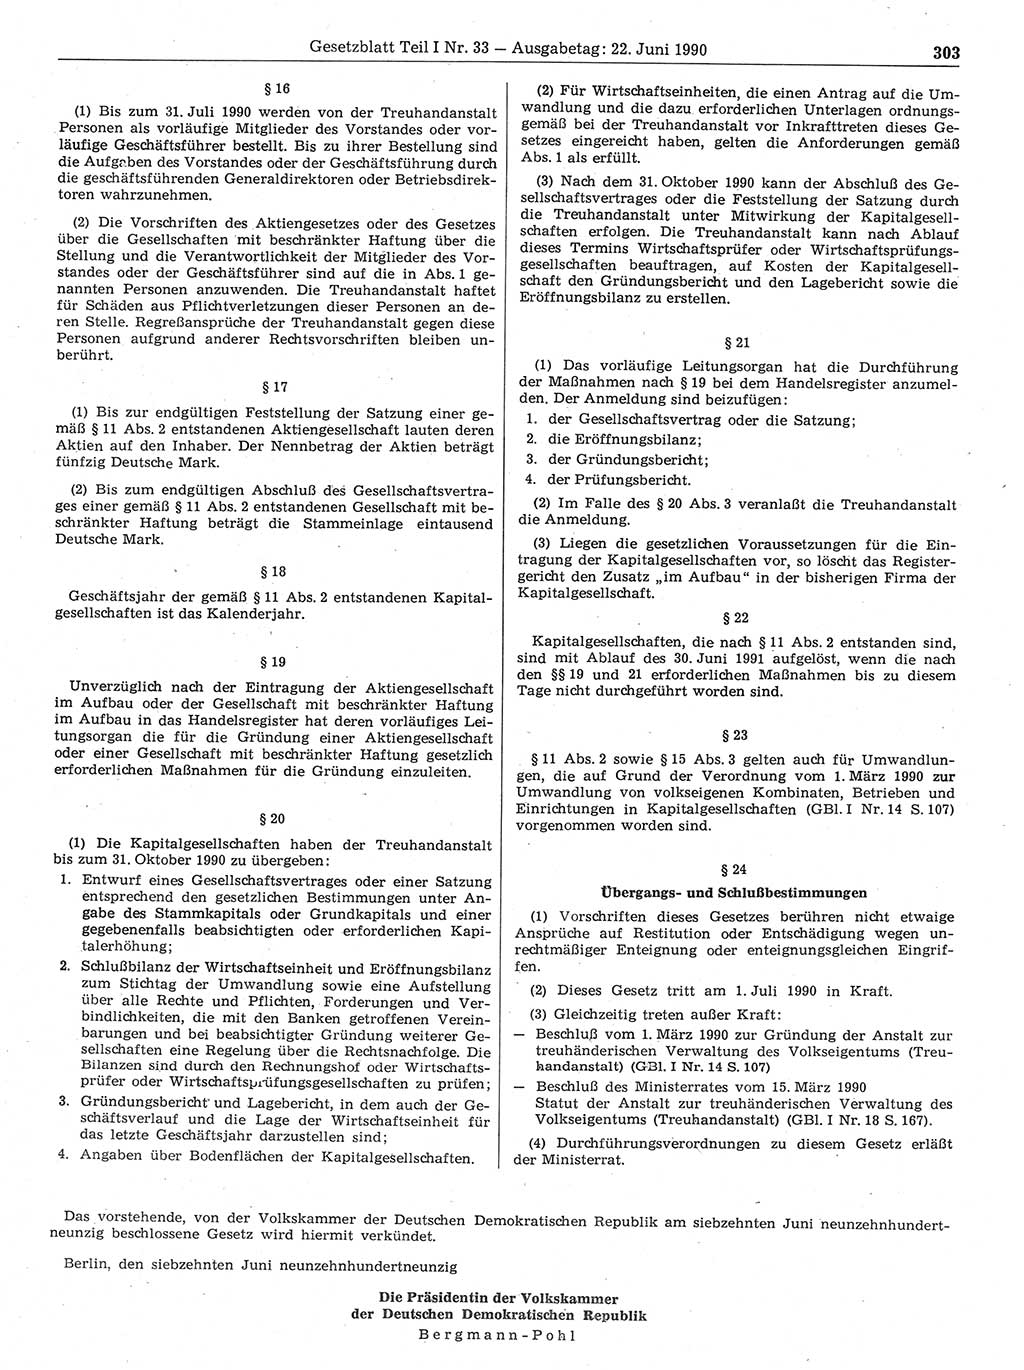 Gesetzblatt (GBl.) der Deutschen Demokratischen Republik (DDR) Teil Ⅰ 1990, Seite 303 (GBl. DDR Ⅰ 1990, S. 303)